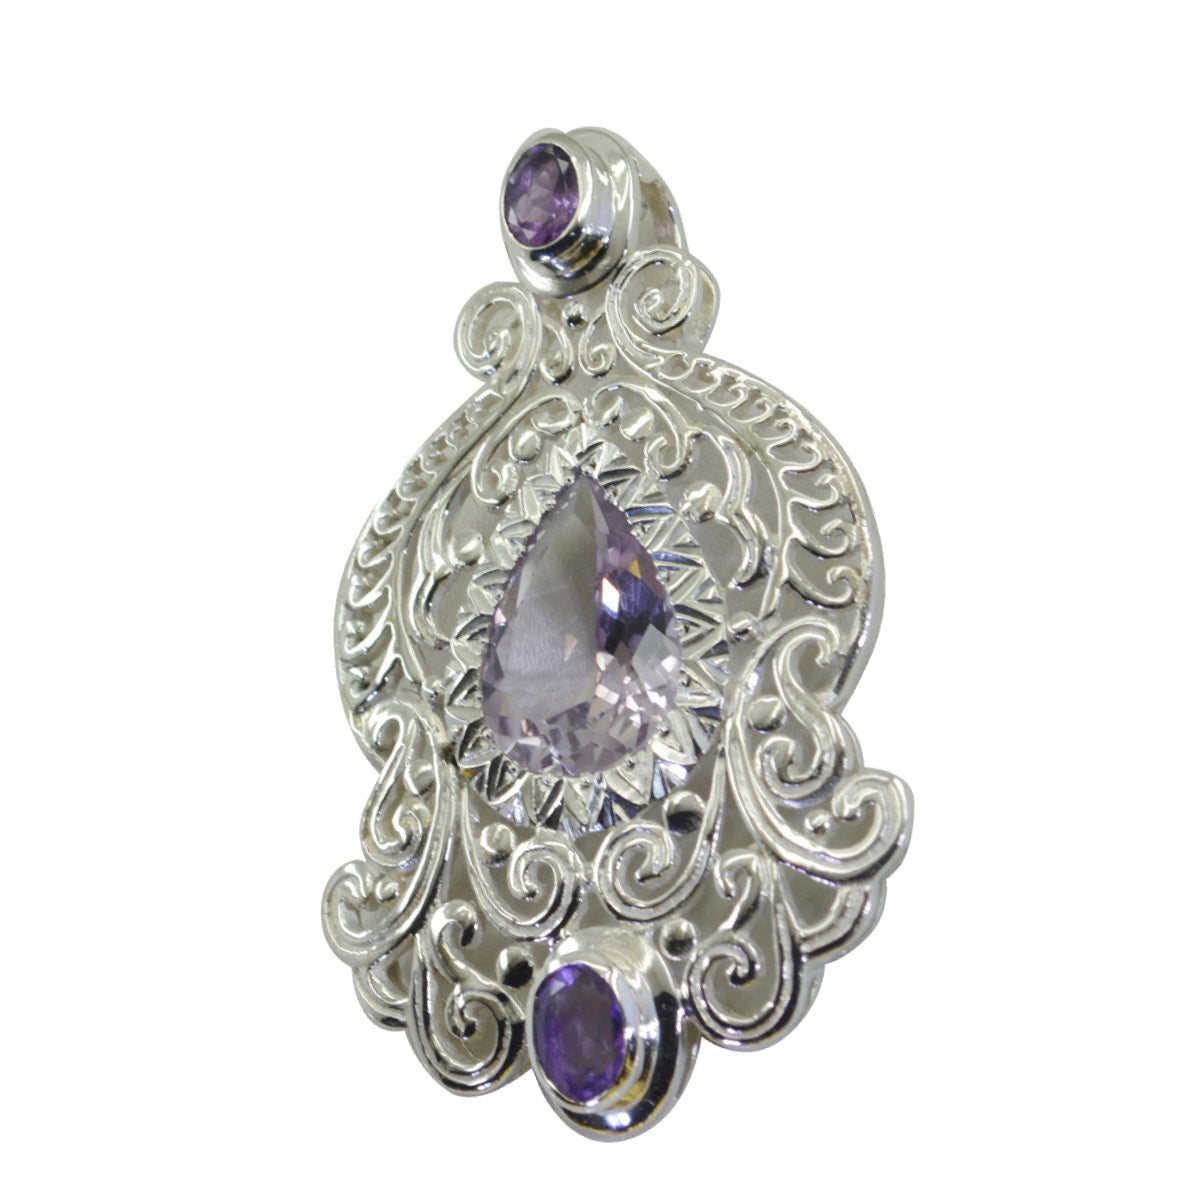 Riyo bonita piedra preciosa, amatista púrpura multifacetada, colgante de plata de ley 1125, regalo para cumpleaños